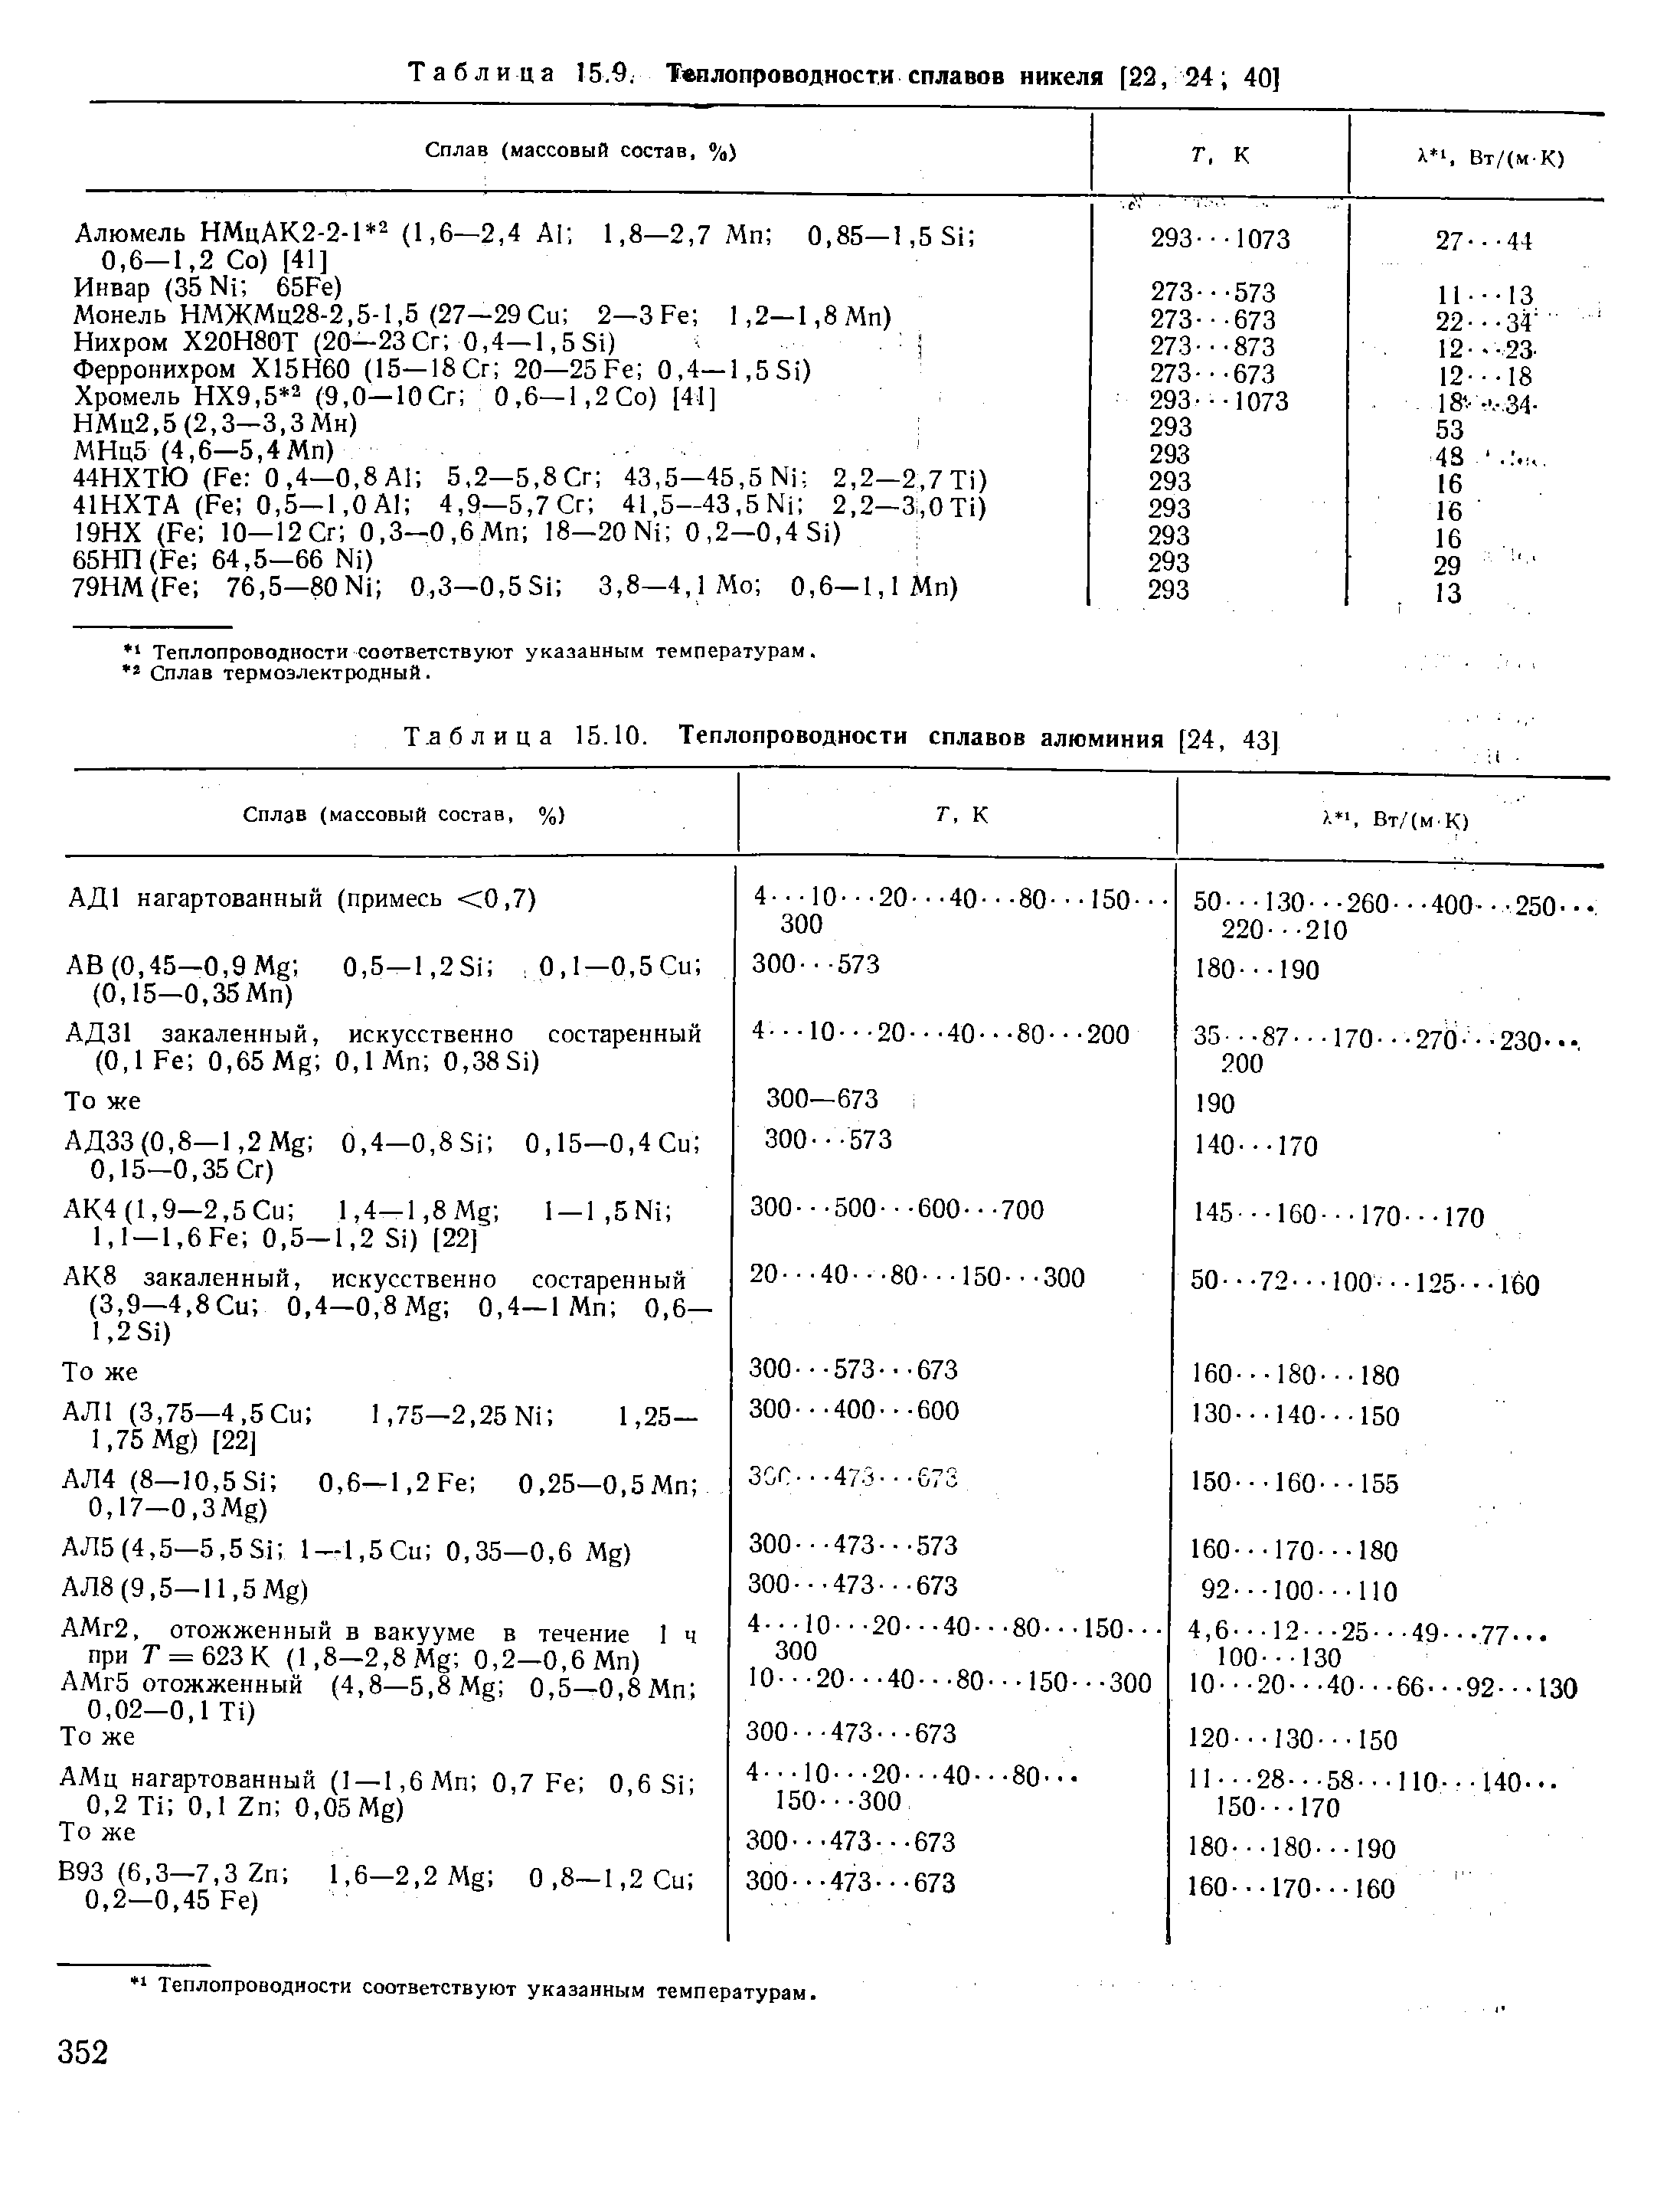 Таблица 15.10. Теплопроводности сплавов алюминия [24, 43]
